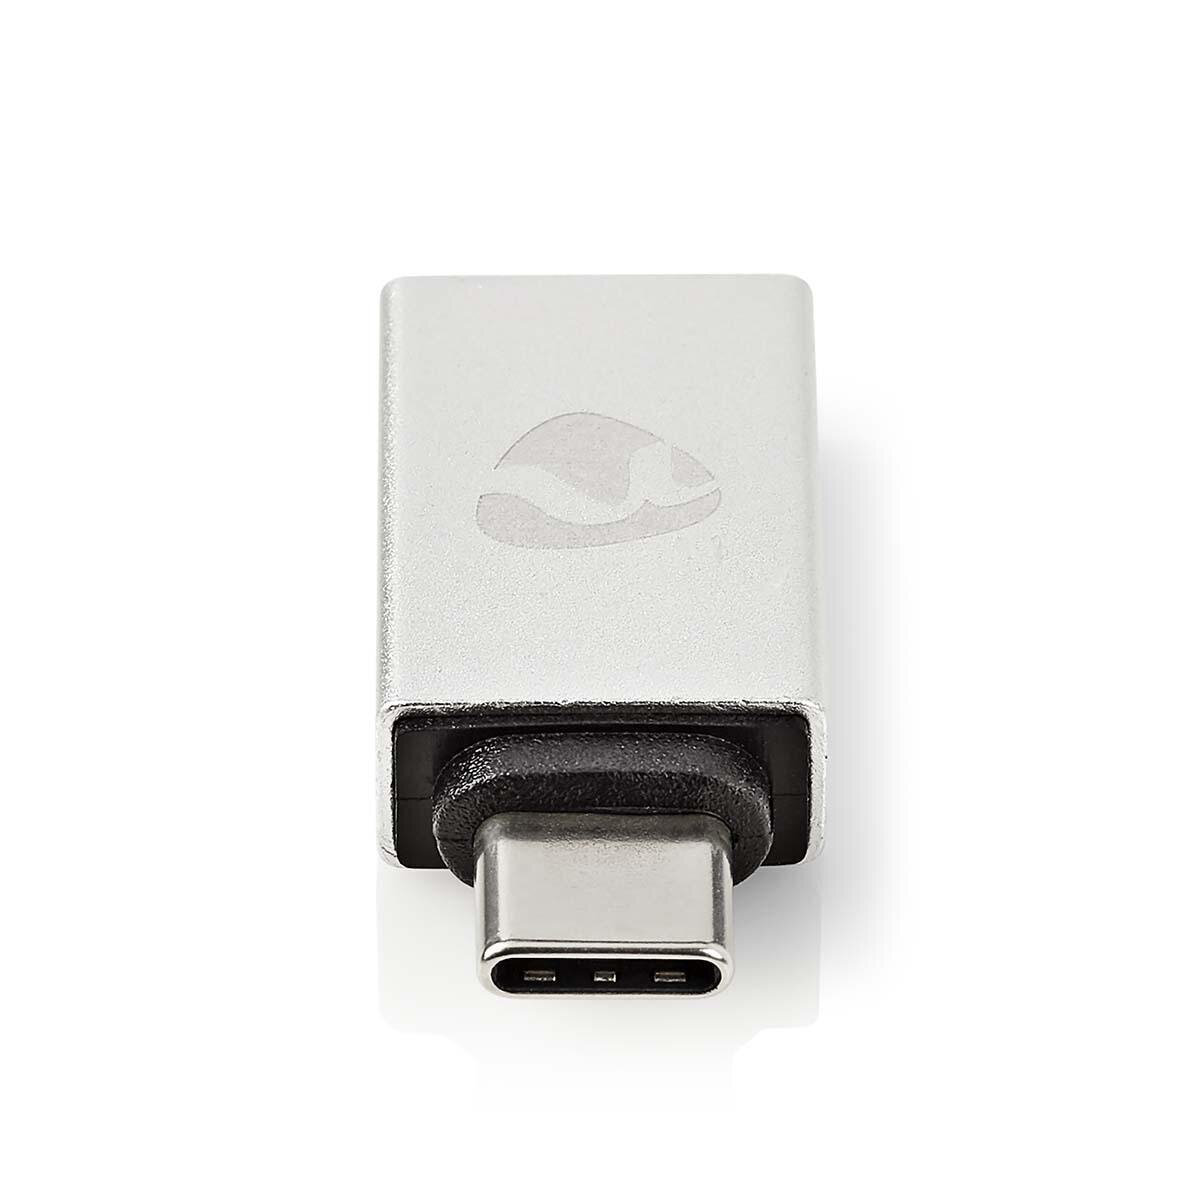 Nedis USB-Adapter | USB 3.2 Gen 1 | USB-C™ Stecker | USB-A Buchse | 5 Gbps | Vernickelt | Silber | Verpackung mit Sichtfenster von Nedis